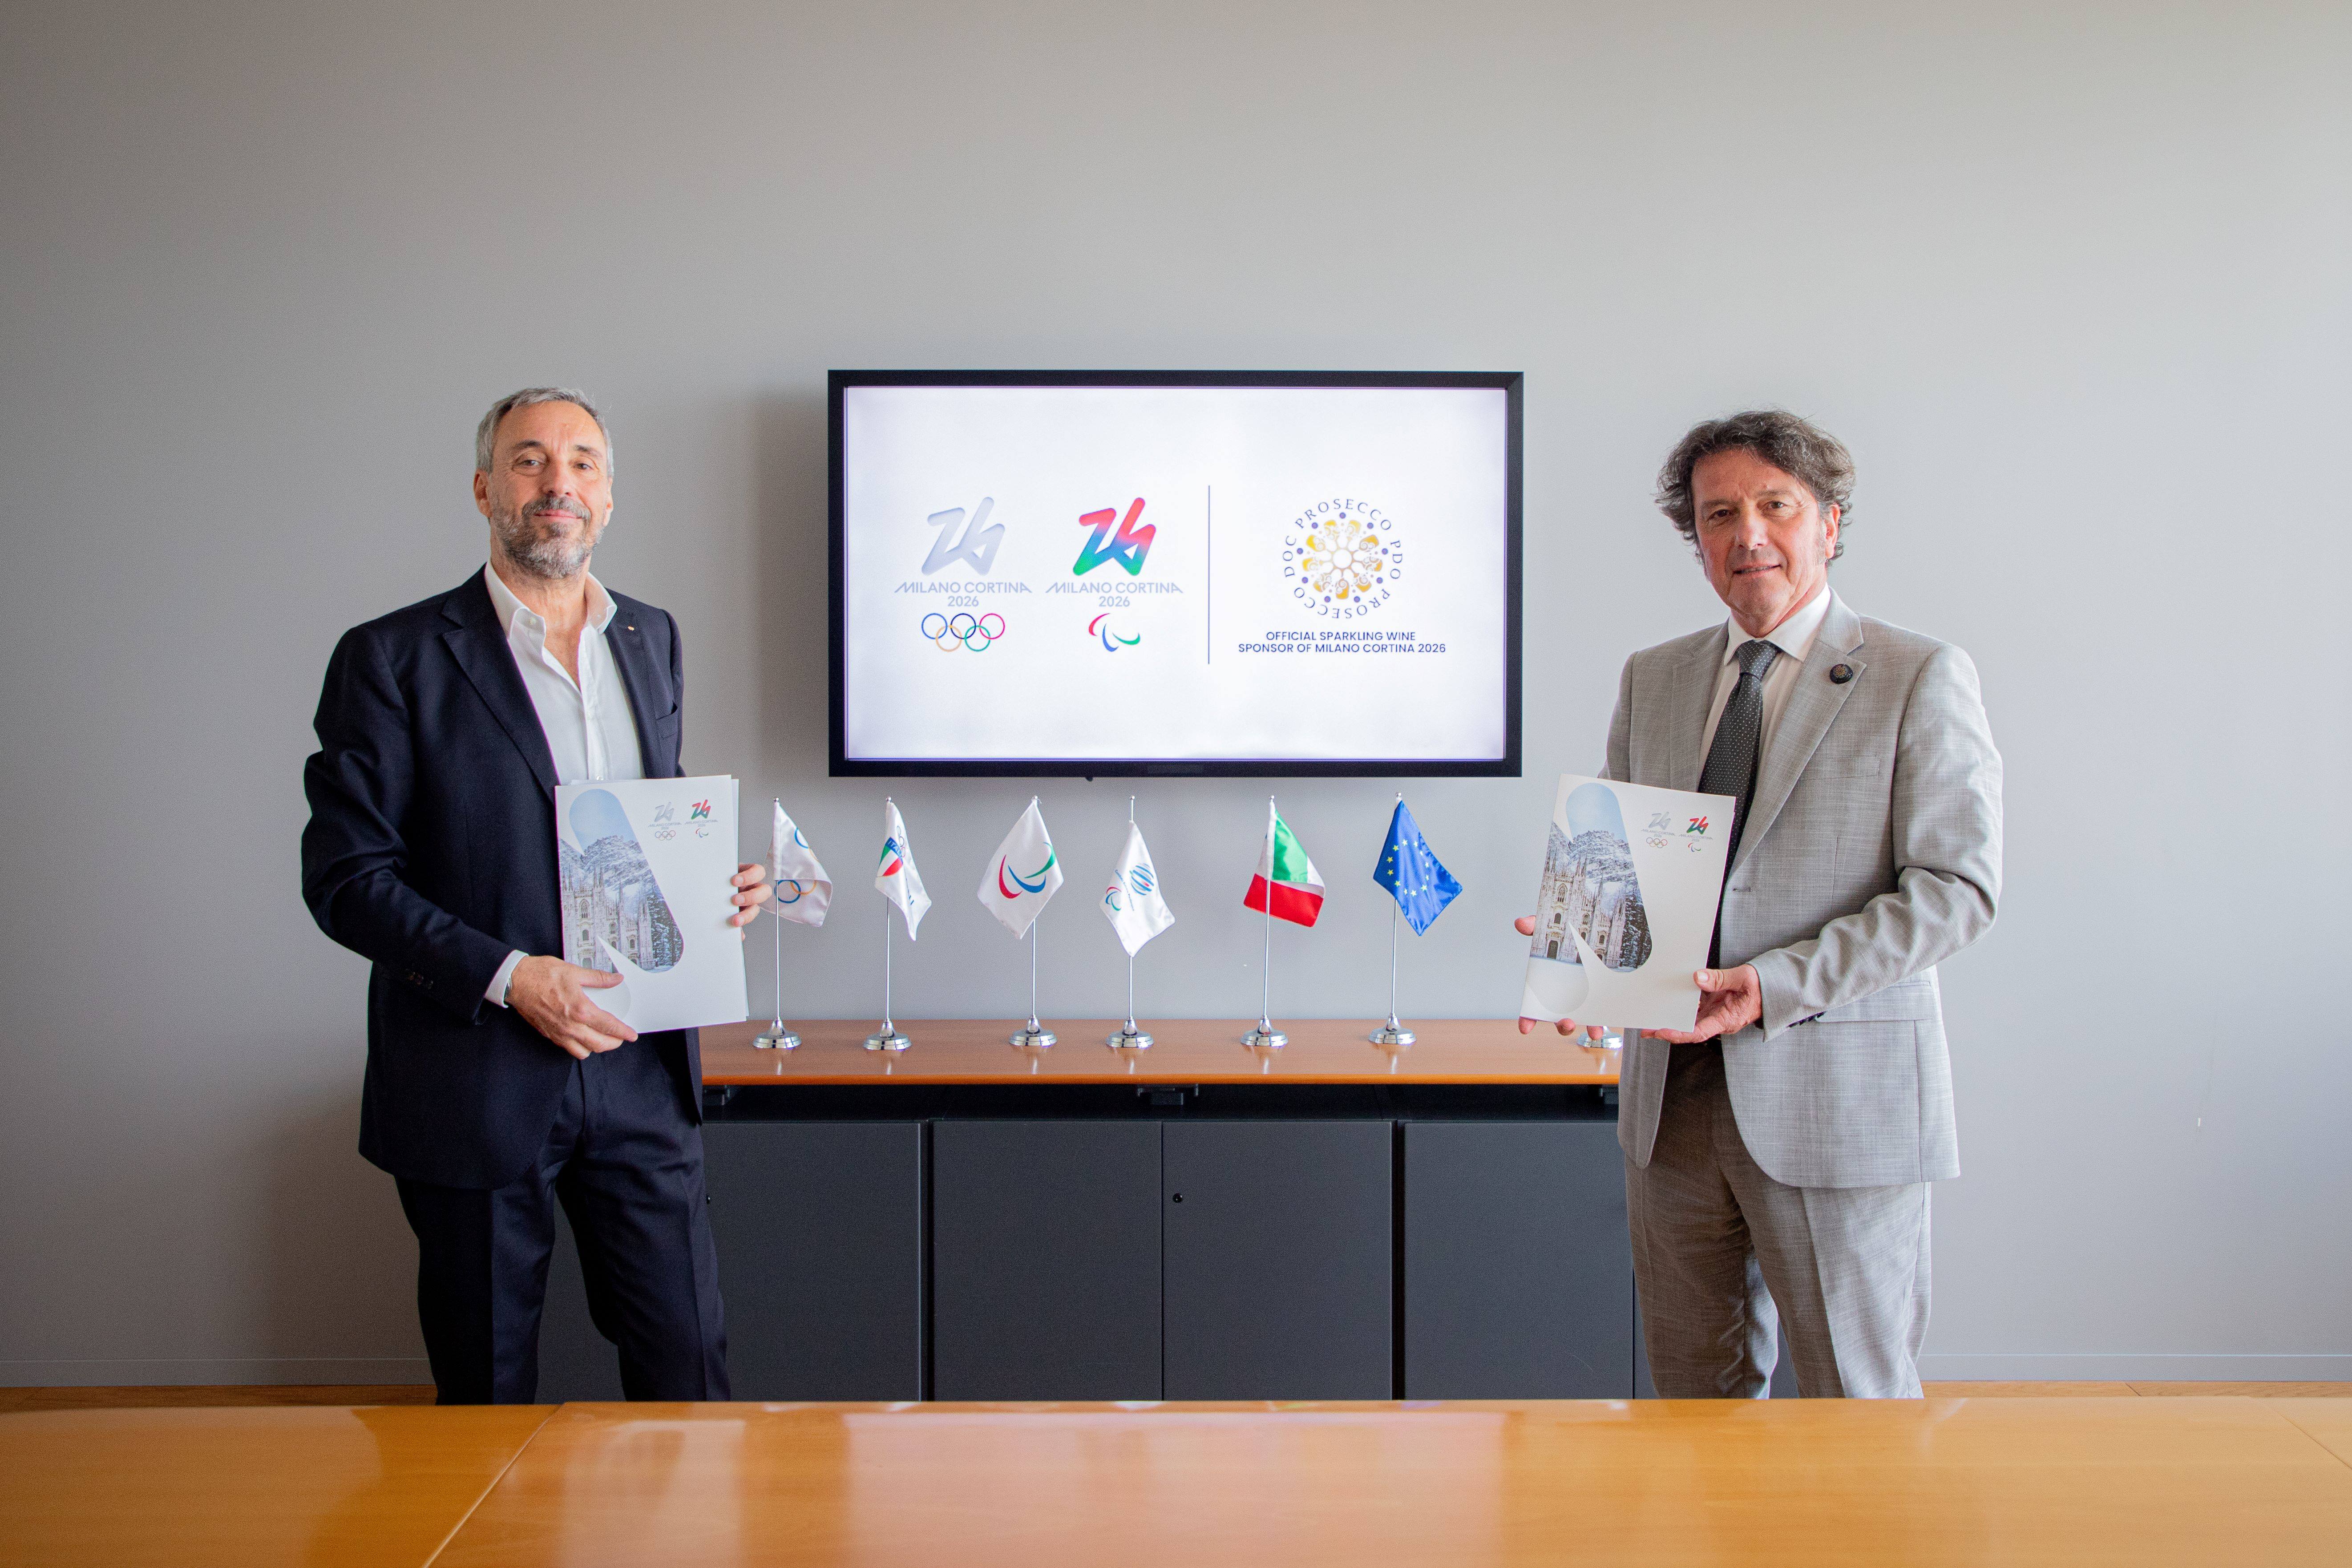 Foto von Andrea Varnier, Geschäftsführer von Mailand Cortina 2026 und Stefano Zanette, Präsident des Konsortiums Prosecco DOC 